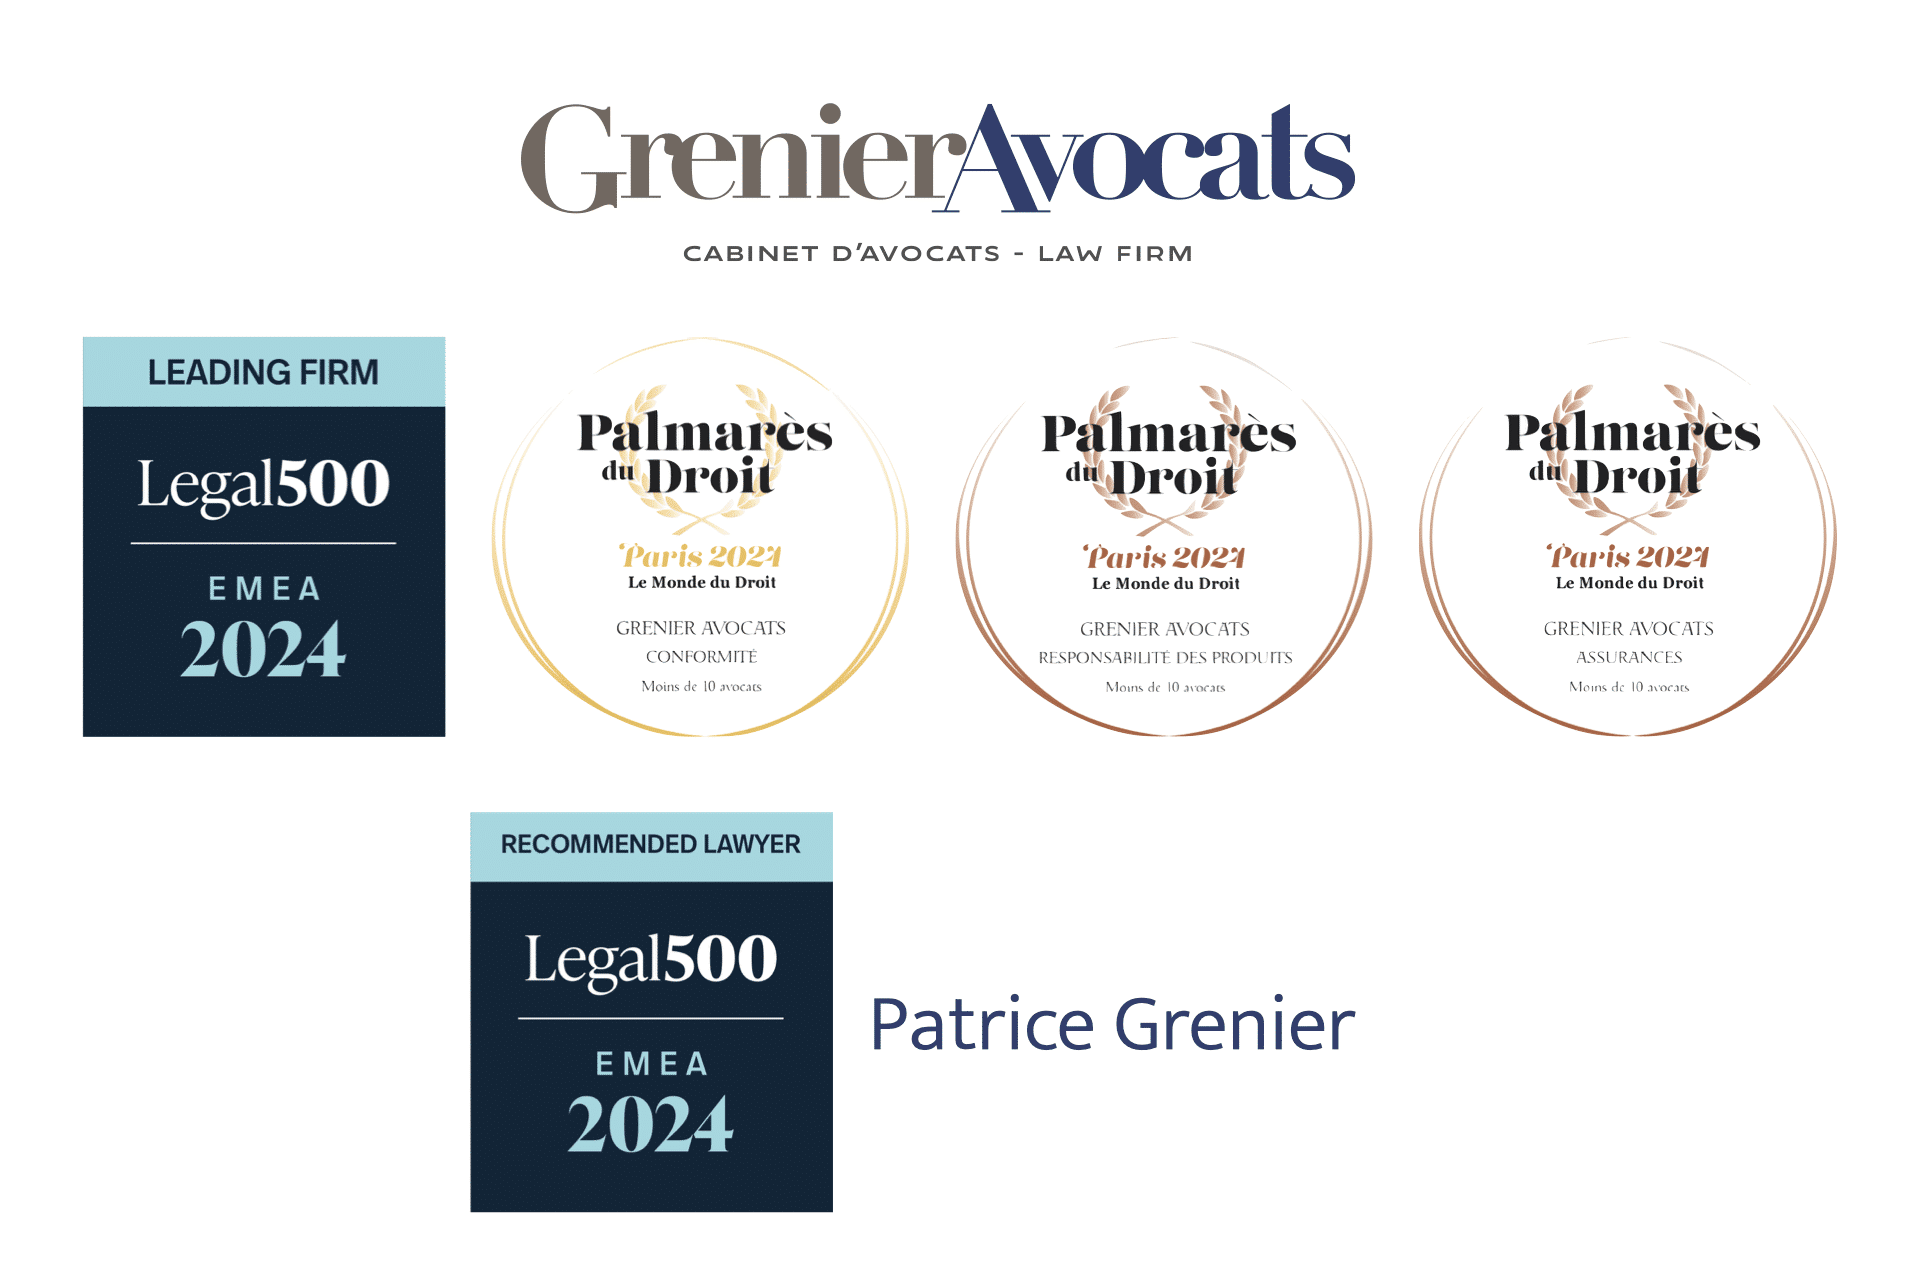 Entrée dans le LEGAL 500 EMEA 2024 – Palmarès du Droit 2024 – Grenier Avocats